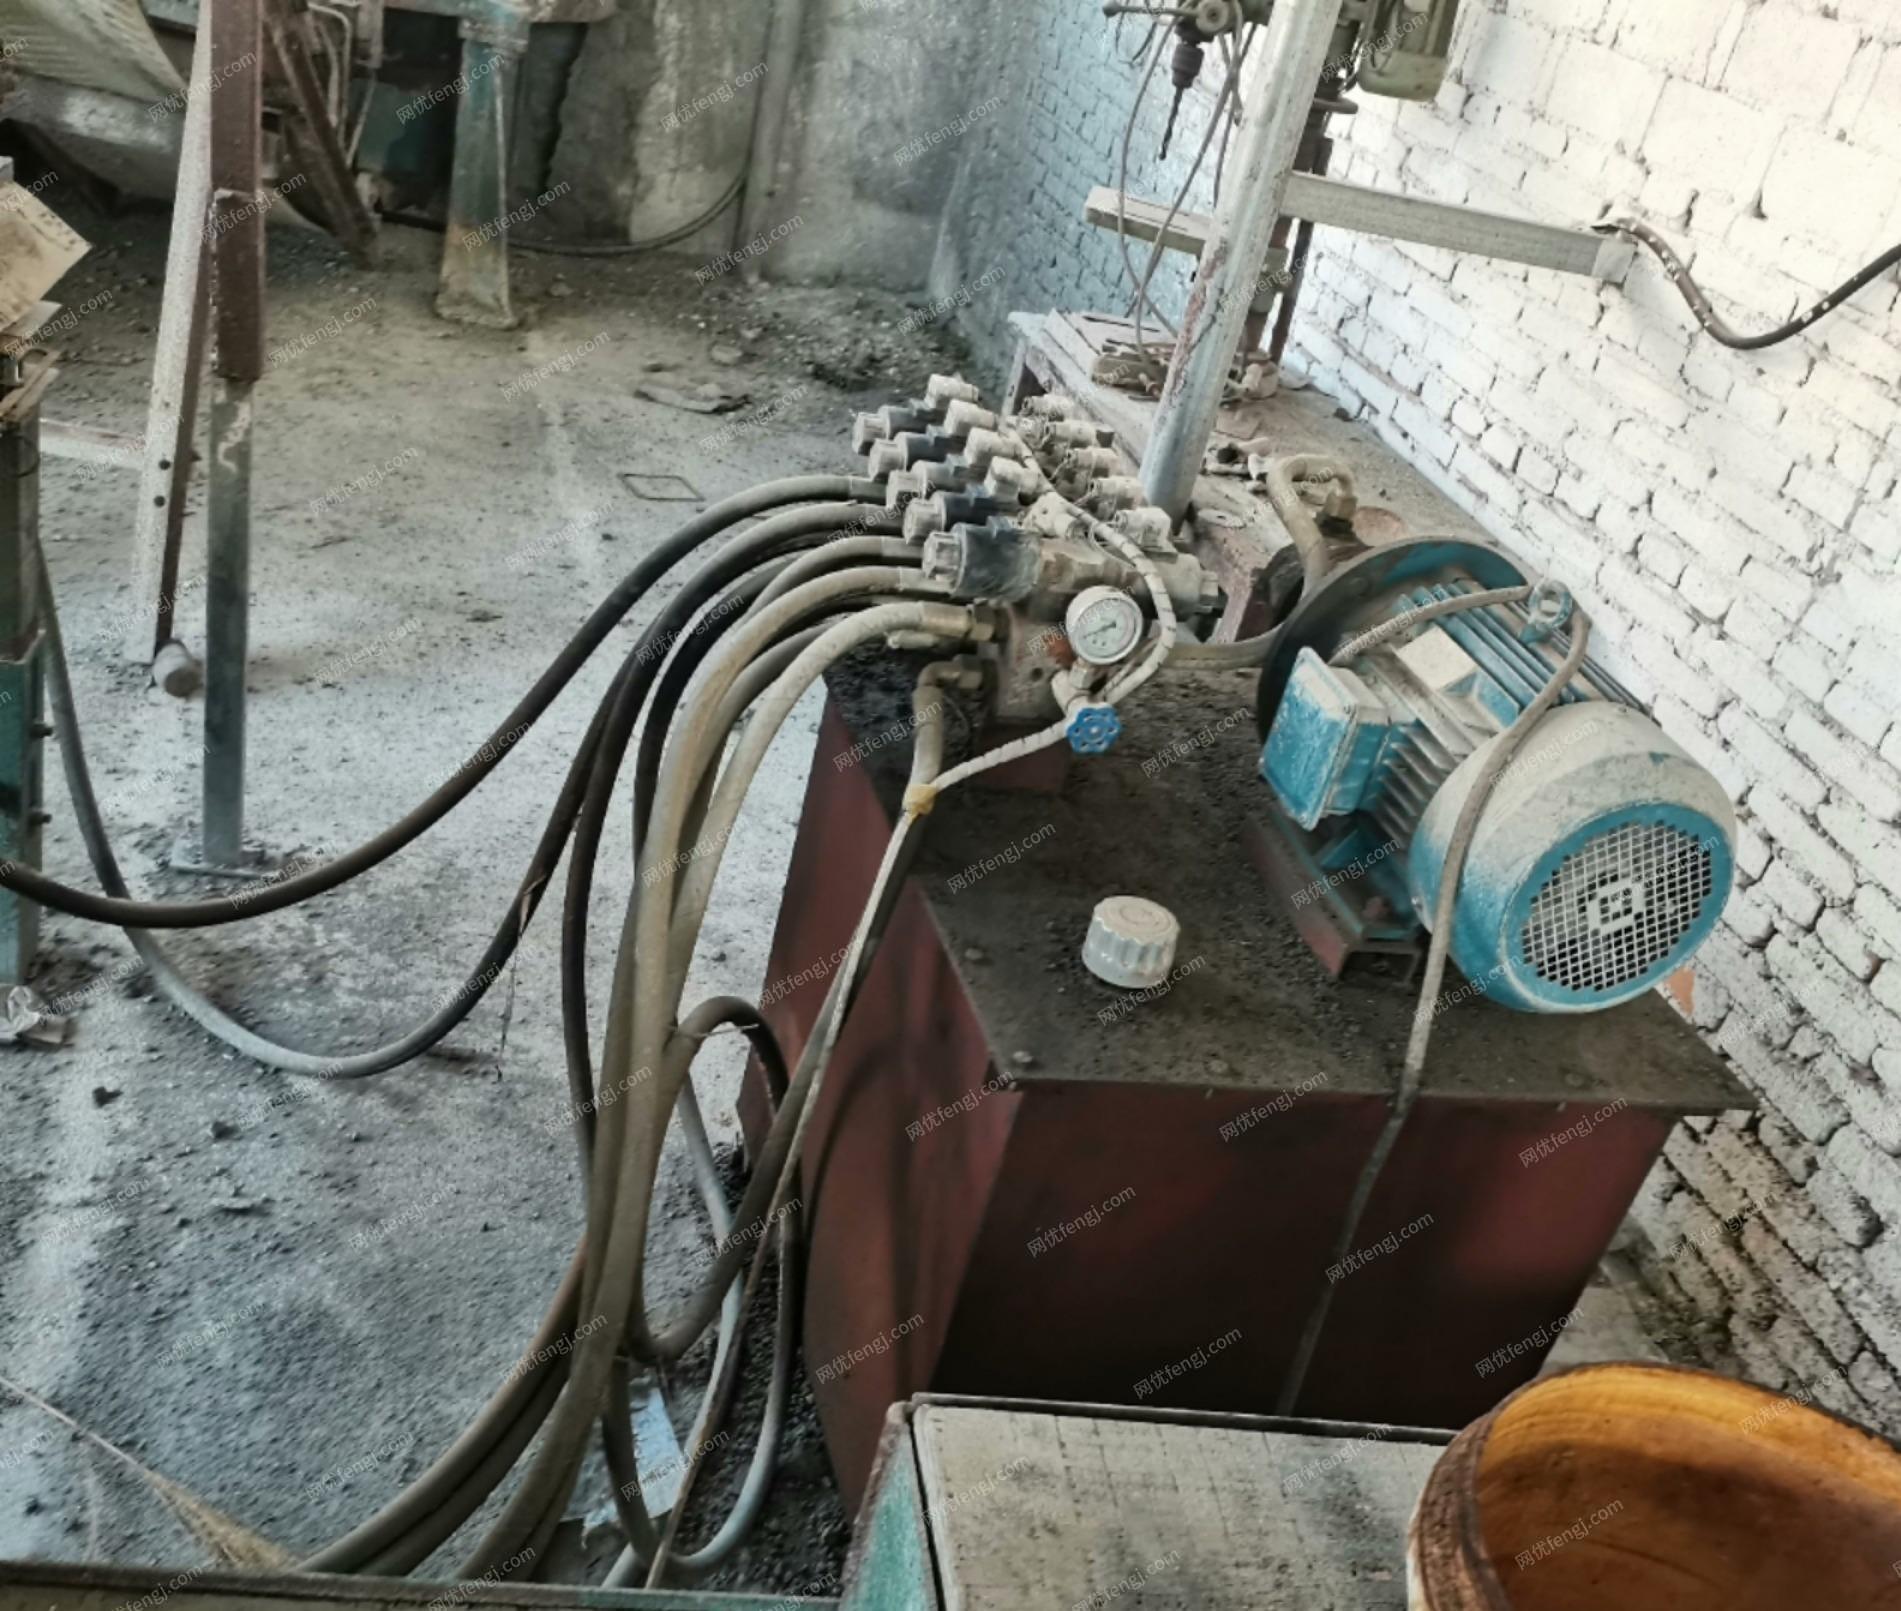 江西九江出售水泥砖机、搅拌机等设备